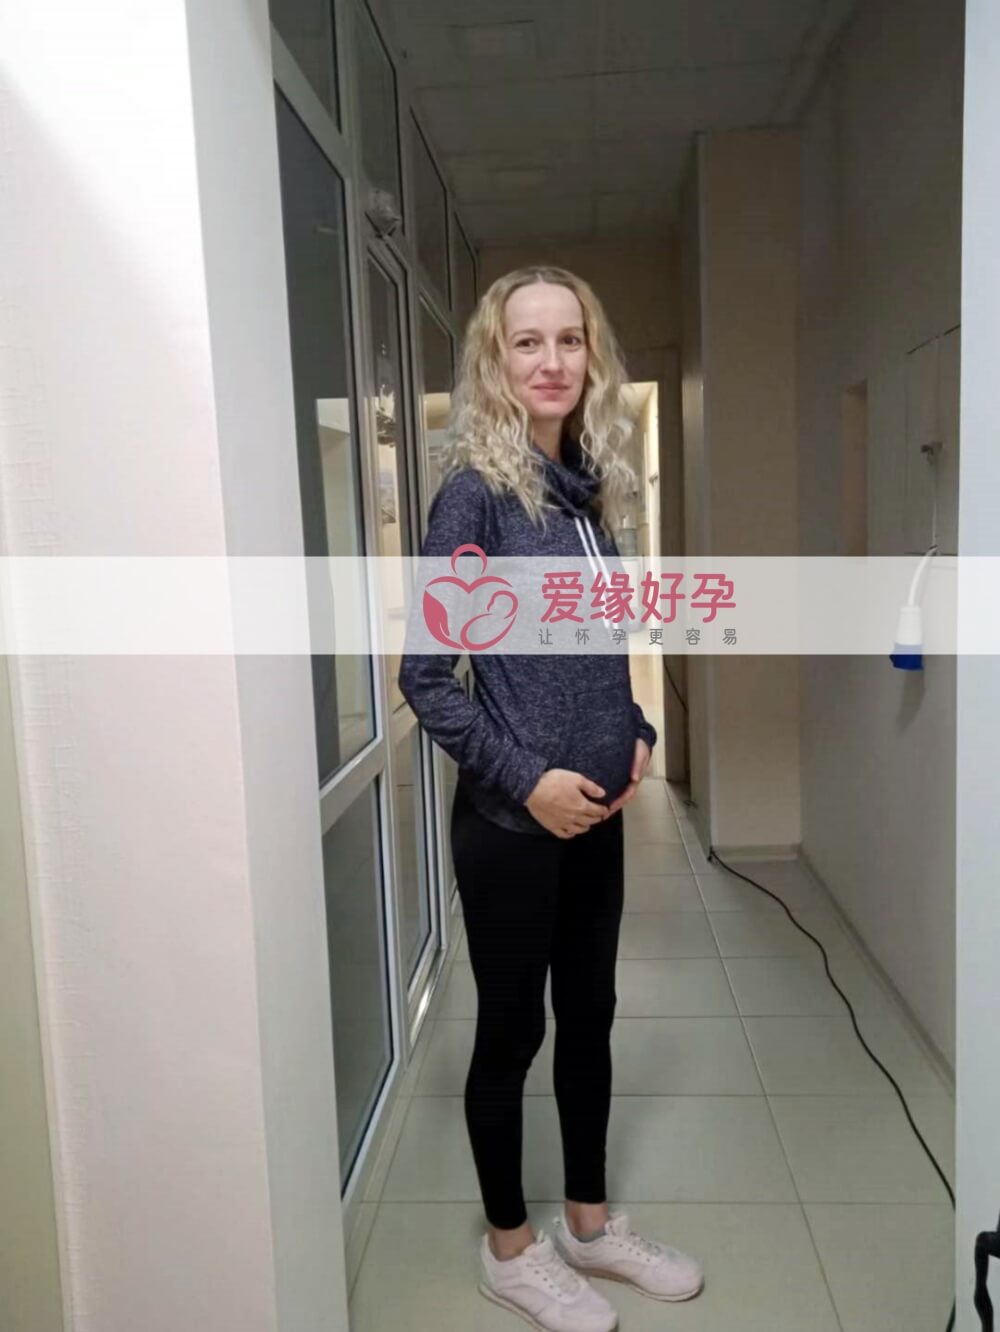 爱缘好孕:乌克兰爱心妈妈18周孕检顺利通过